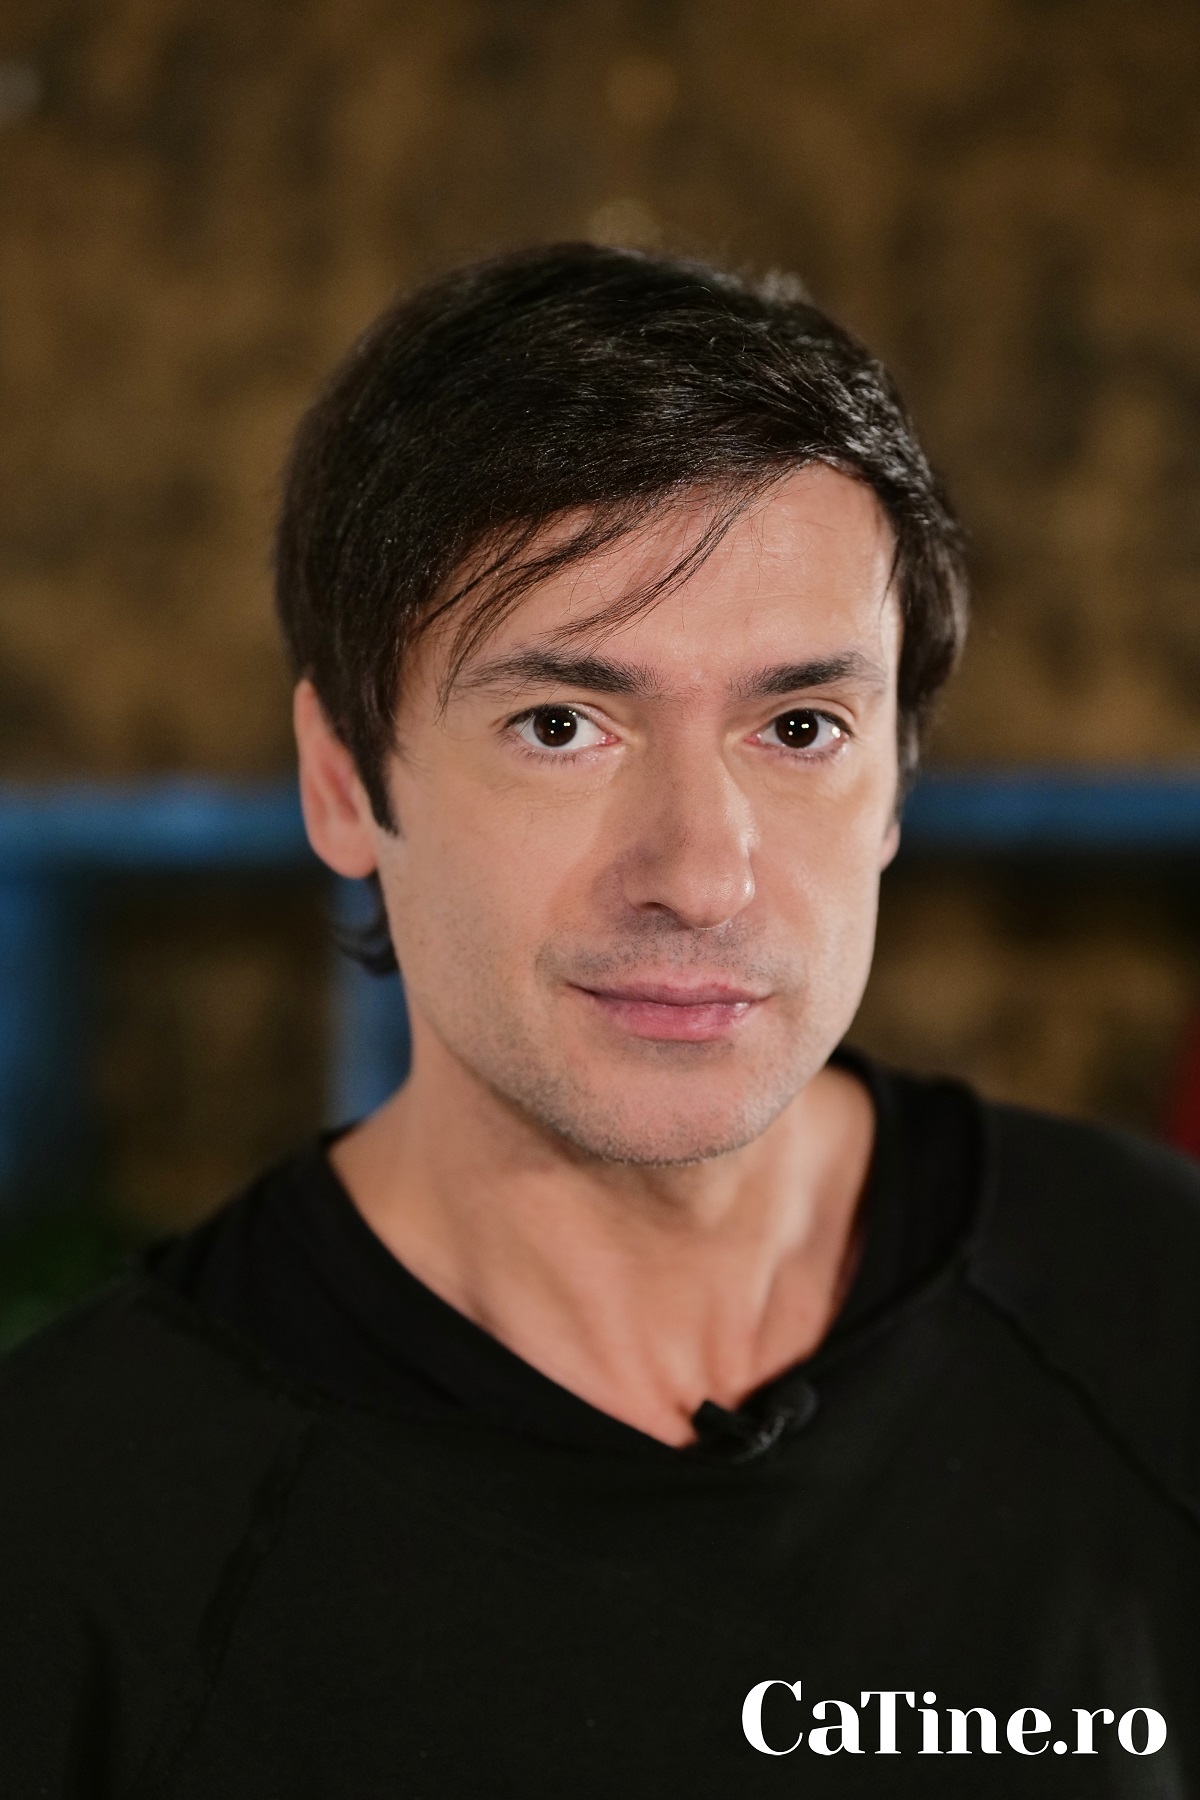 Portret l actorului Radu Vâlcan care pozează pentru interviul CaTine.ro